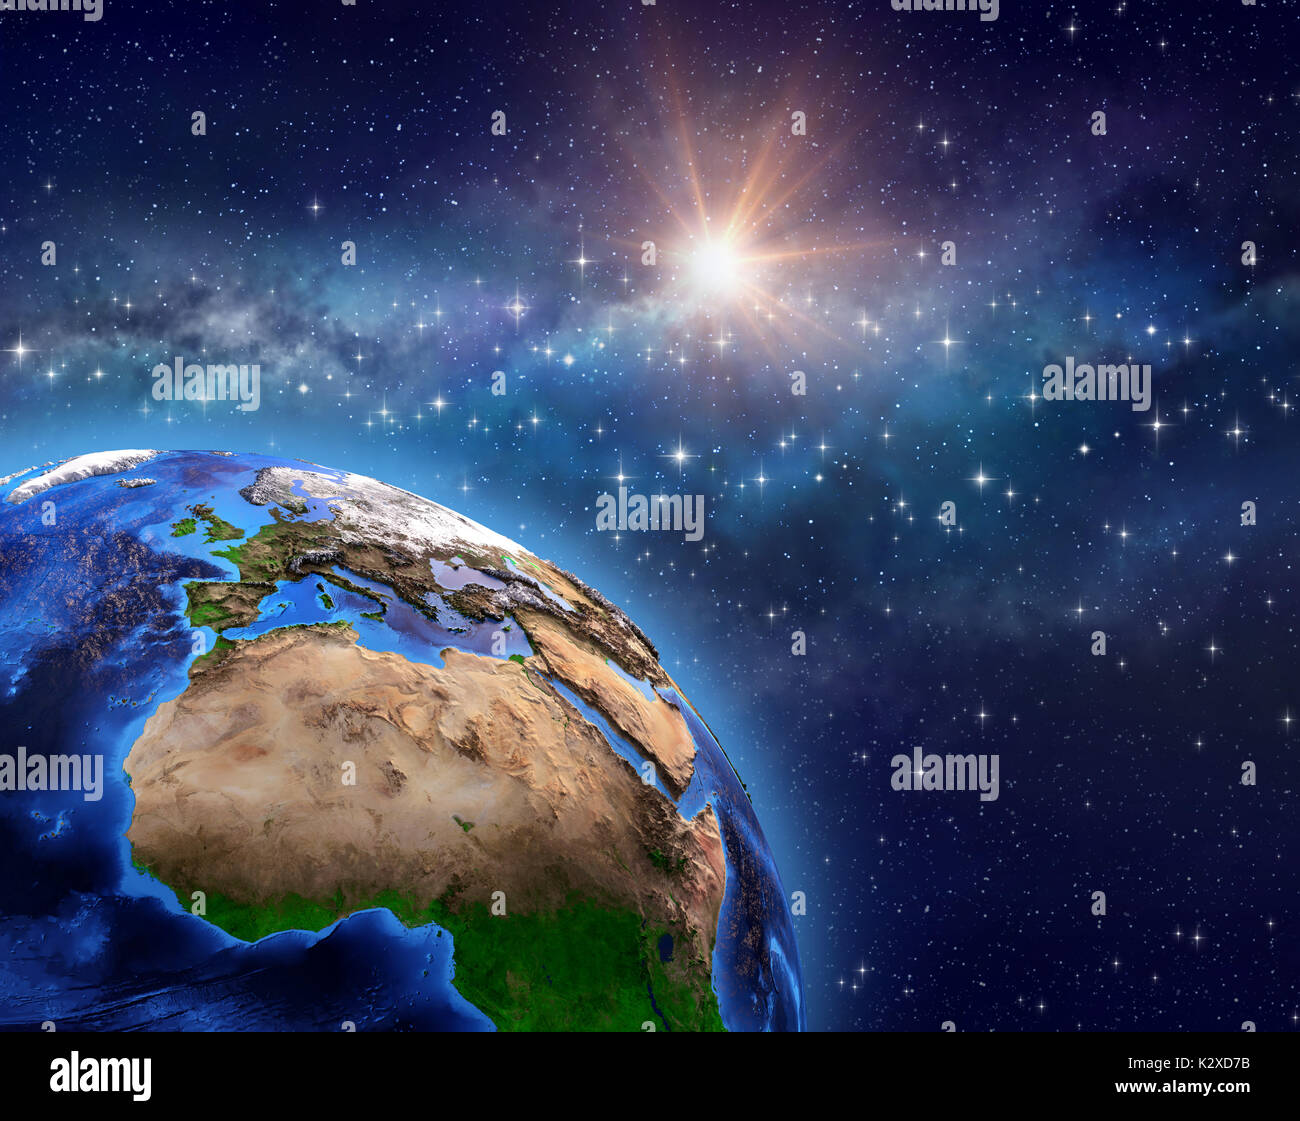 Planet Erde im Weltraum, star Cluster, Milchstraße und helle Sonne weit hinter - 3D-Illustration - Elemente dieses Bild von der NASA eingerichtet, glänzend Stockfoto